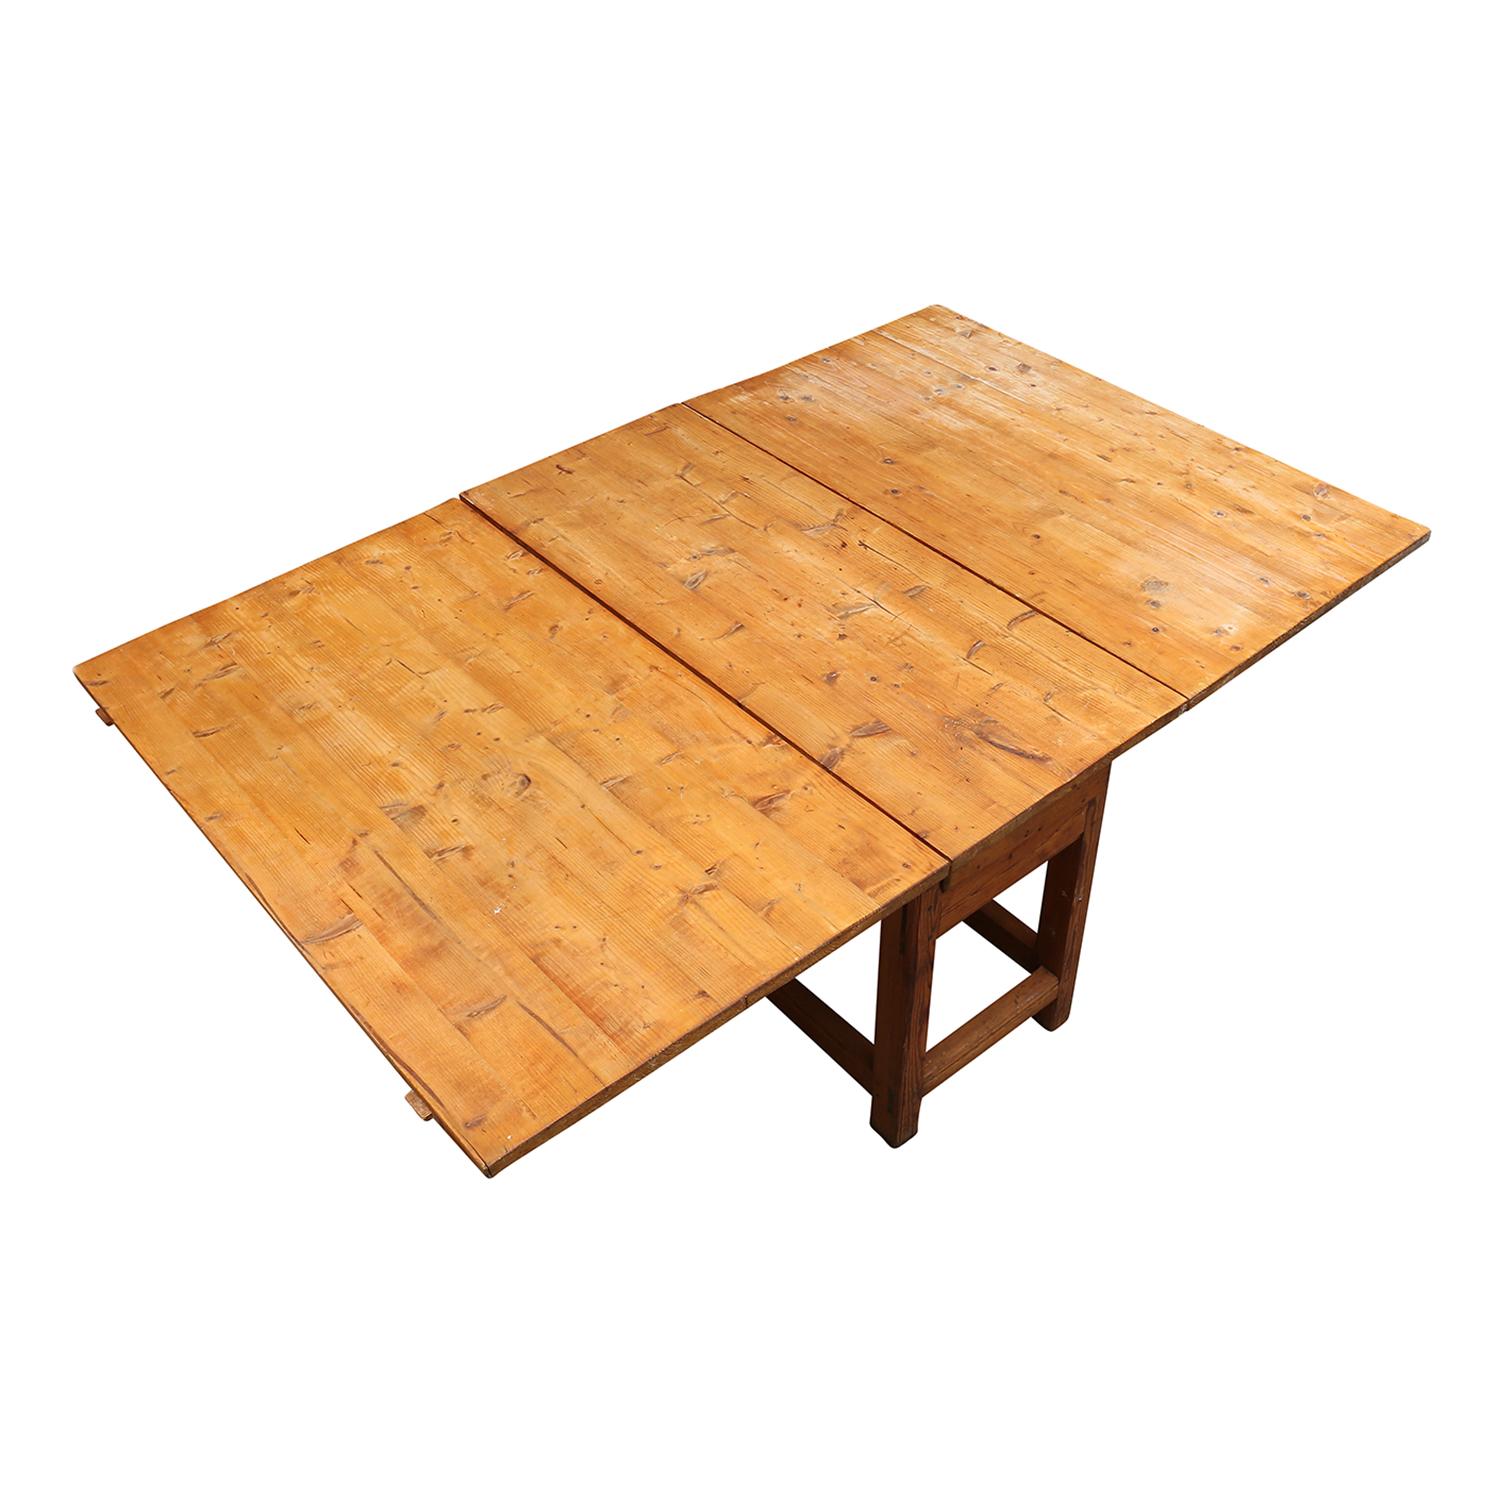 Ein antiker schwedischer Gustavian Slagbord, Klapptisch mit einer Schublade, hergestellt aus handgefertigtem Kiefernholz in gutem Zustand. Der skandinavische Esszimmertisch wird von vier runden Holzbeinen getragen, wobei jede Platte unabhängig von